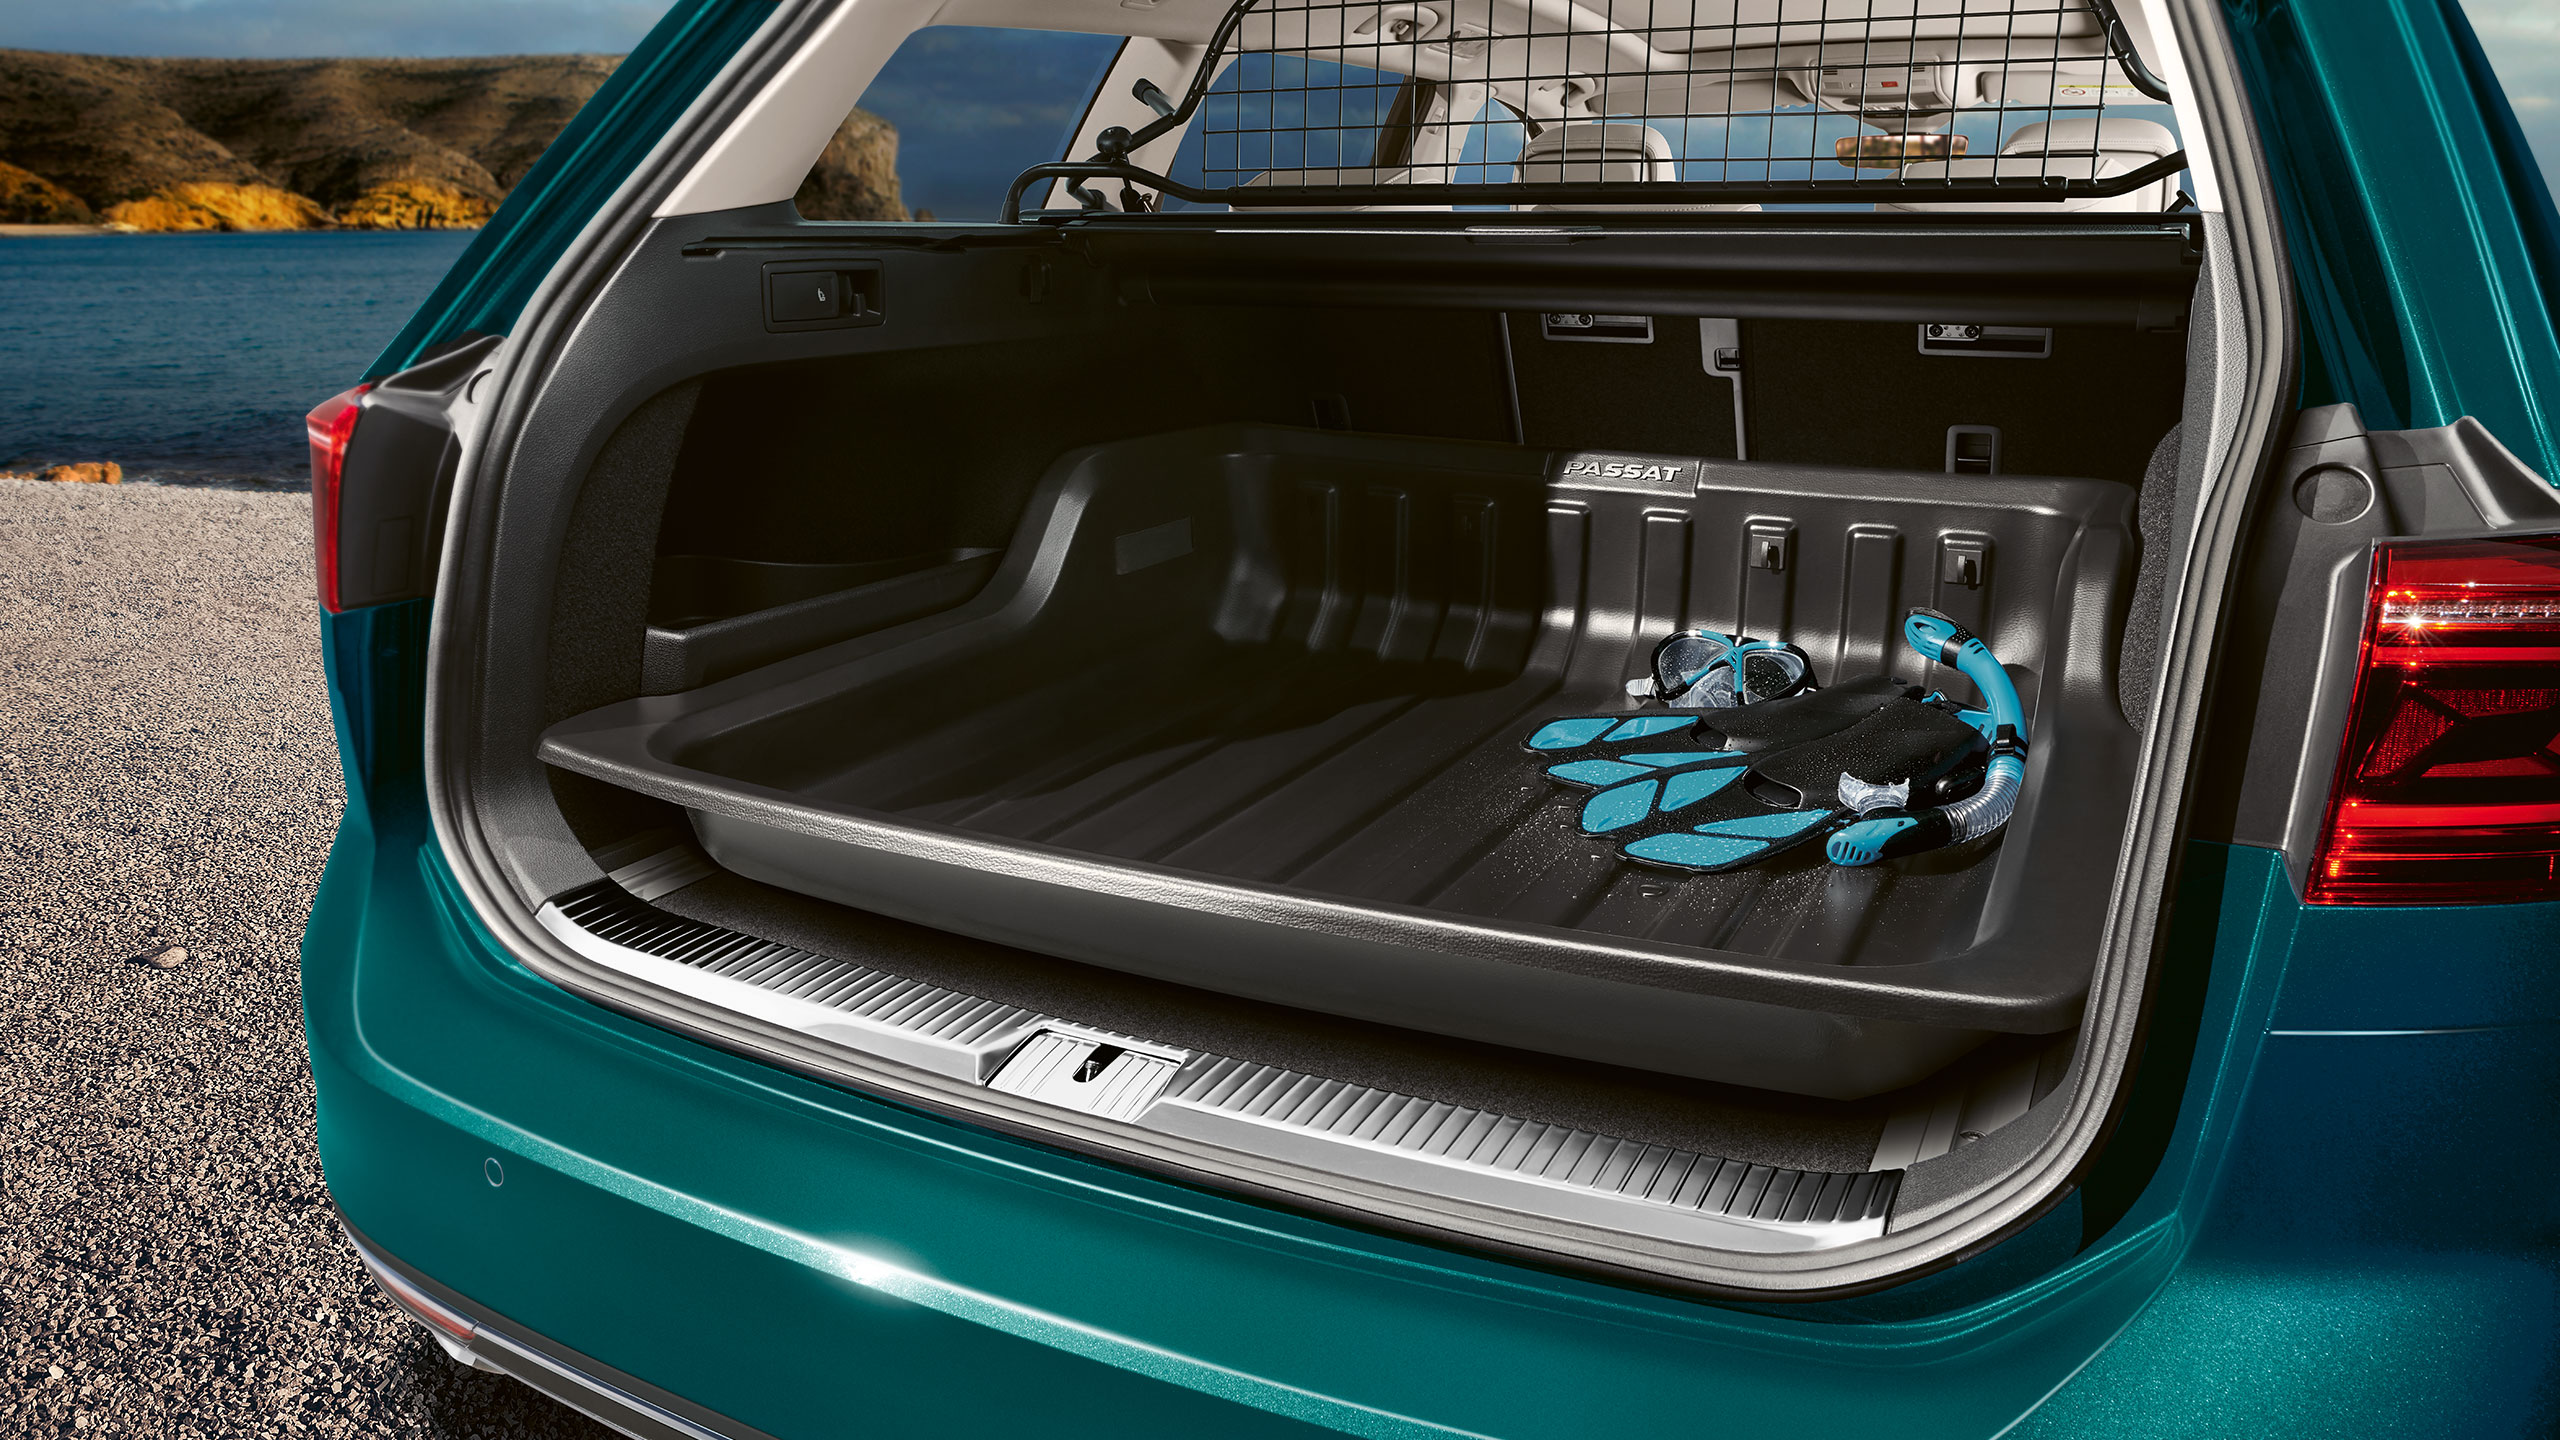 Um carro VW turquesa com um compartimento de bagagem aberto com equipamento de snorkel no interior